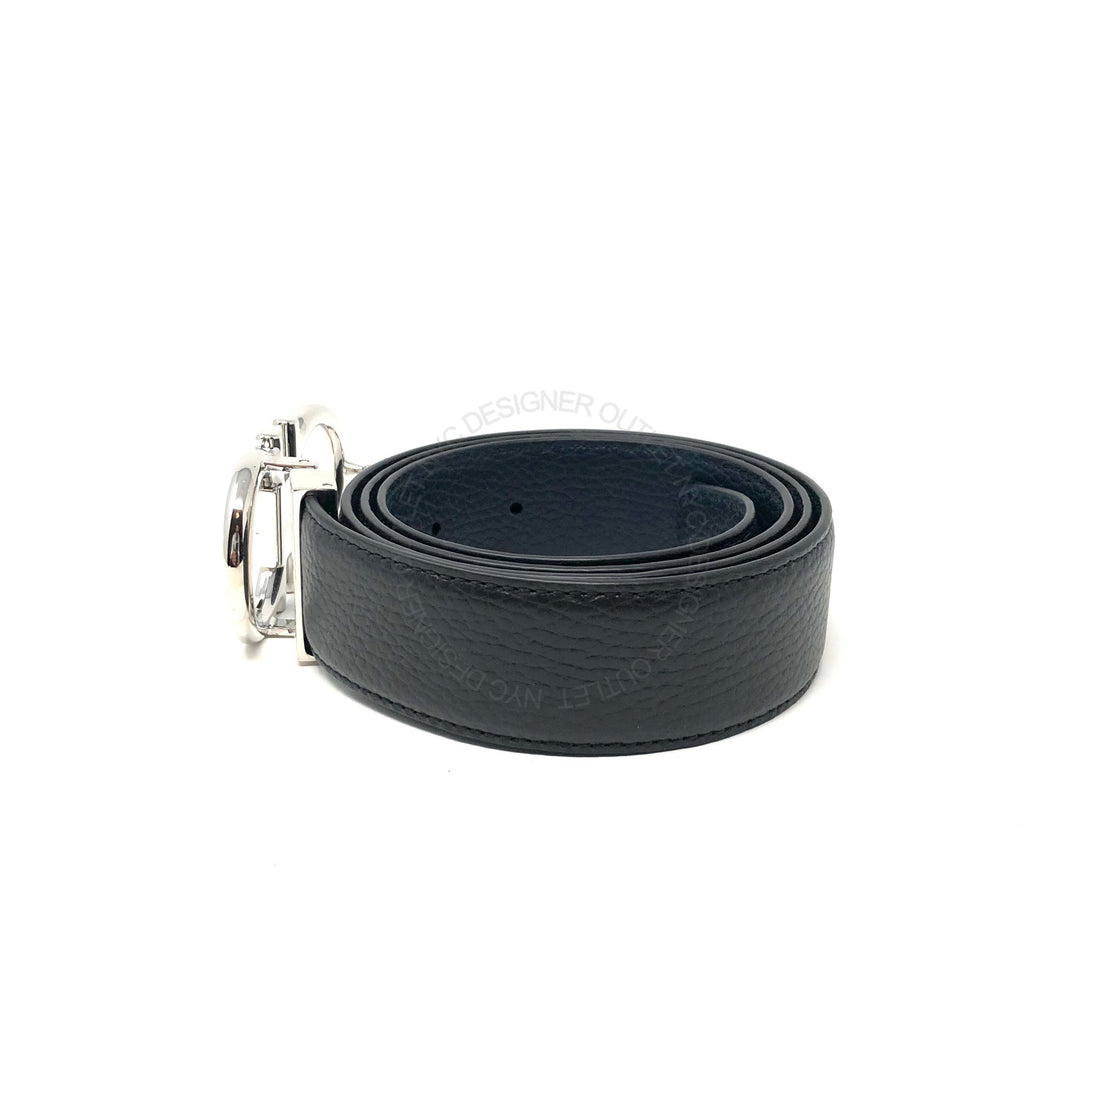 Ferragamo Black/Blue Leather Adjustable & Reversible belt